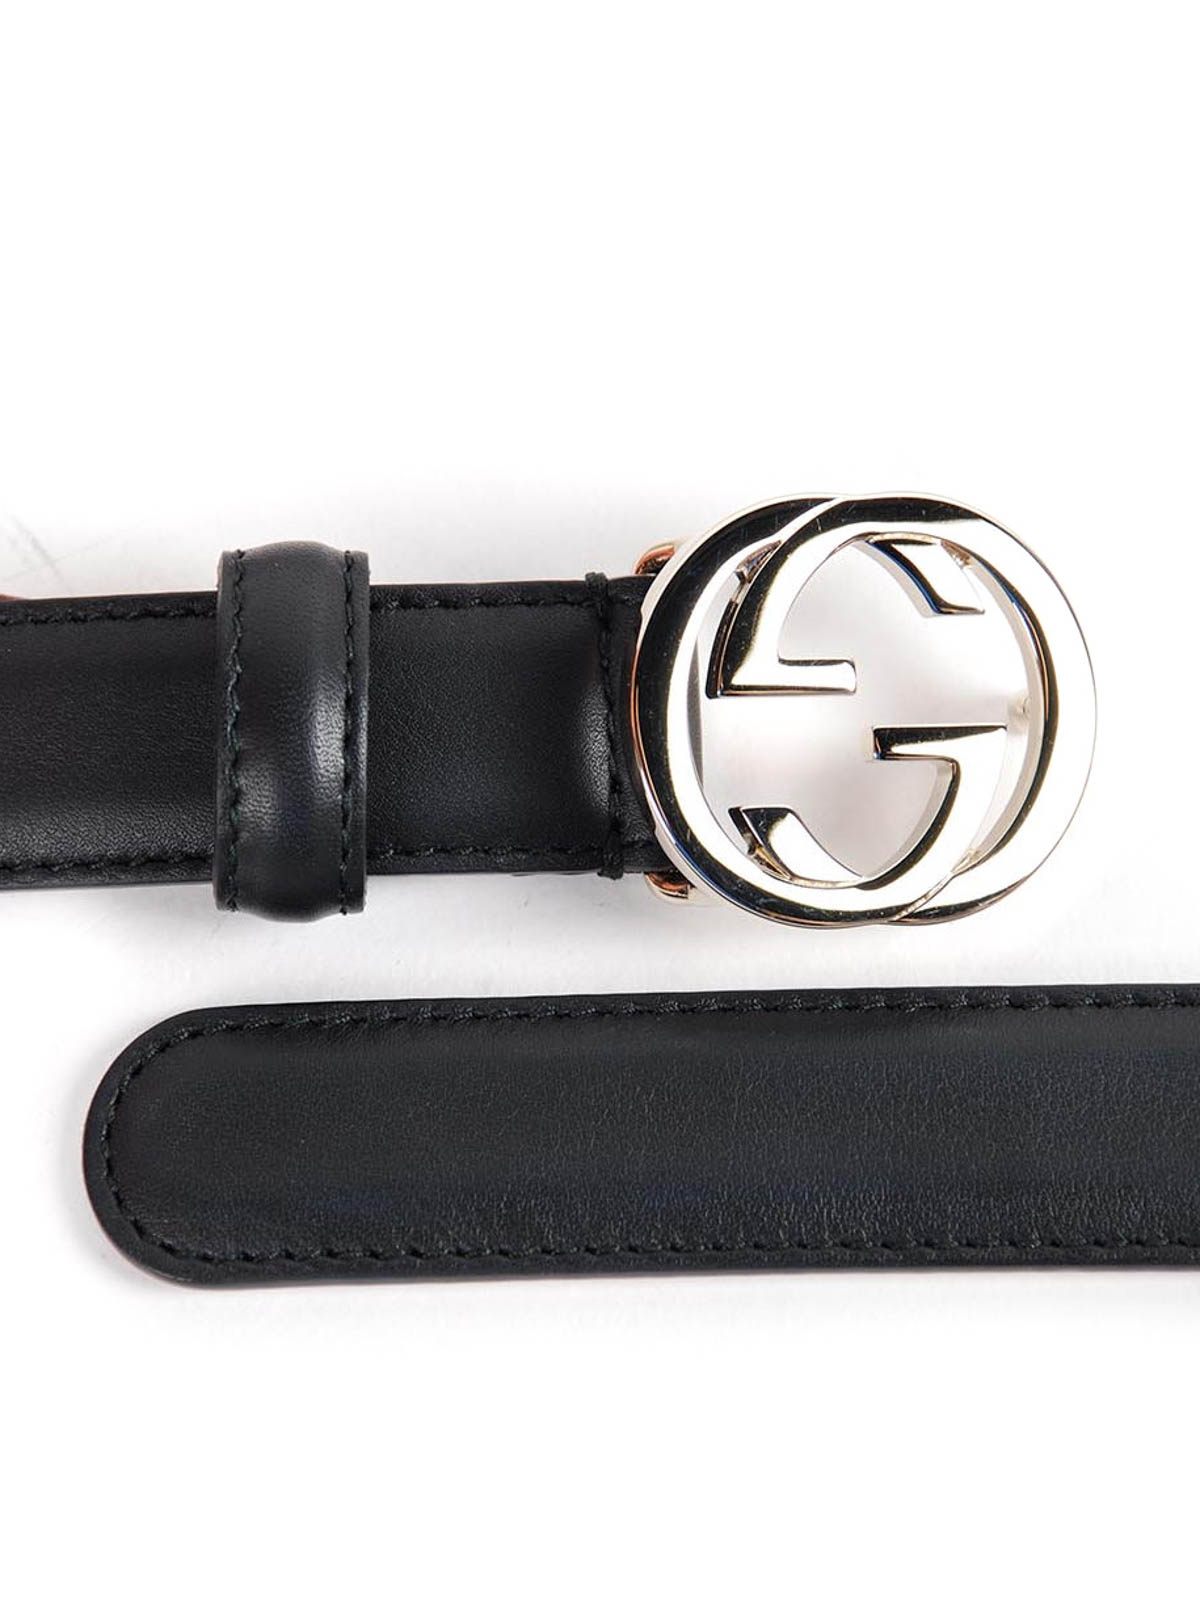 gucci belt with interlocking g buckle